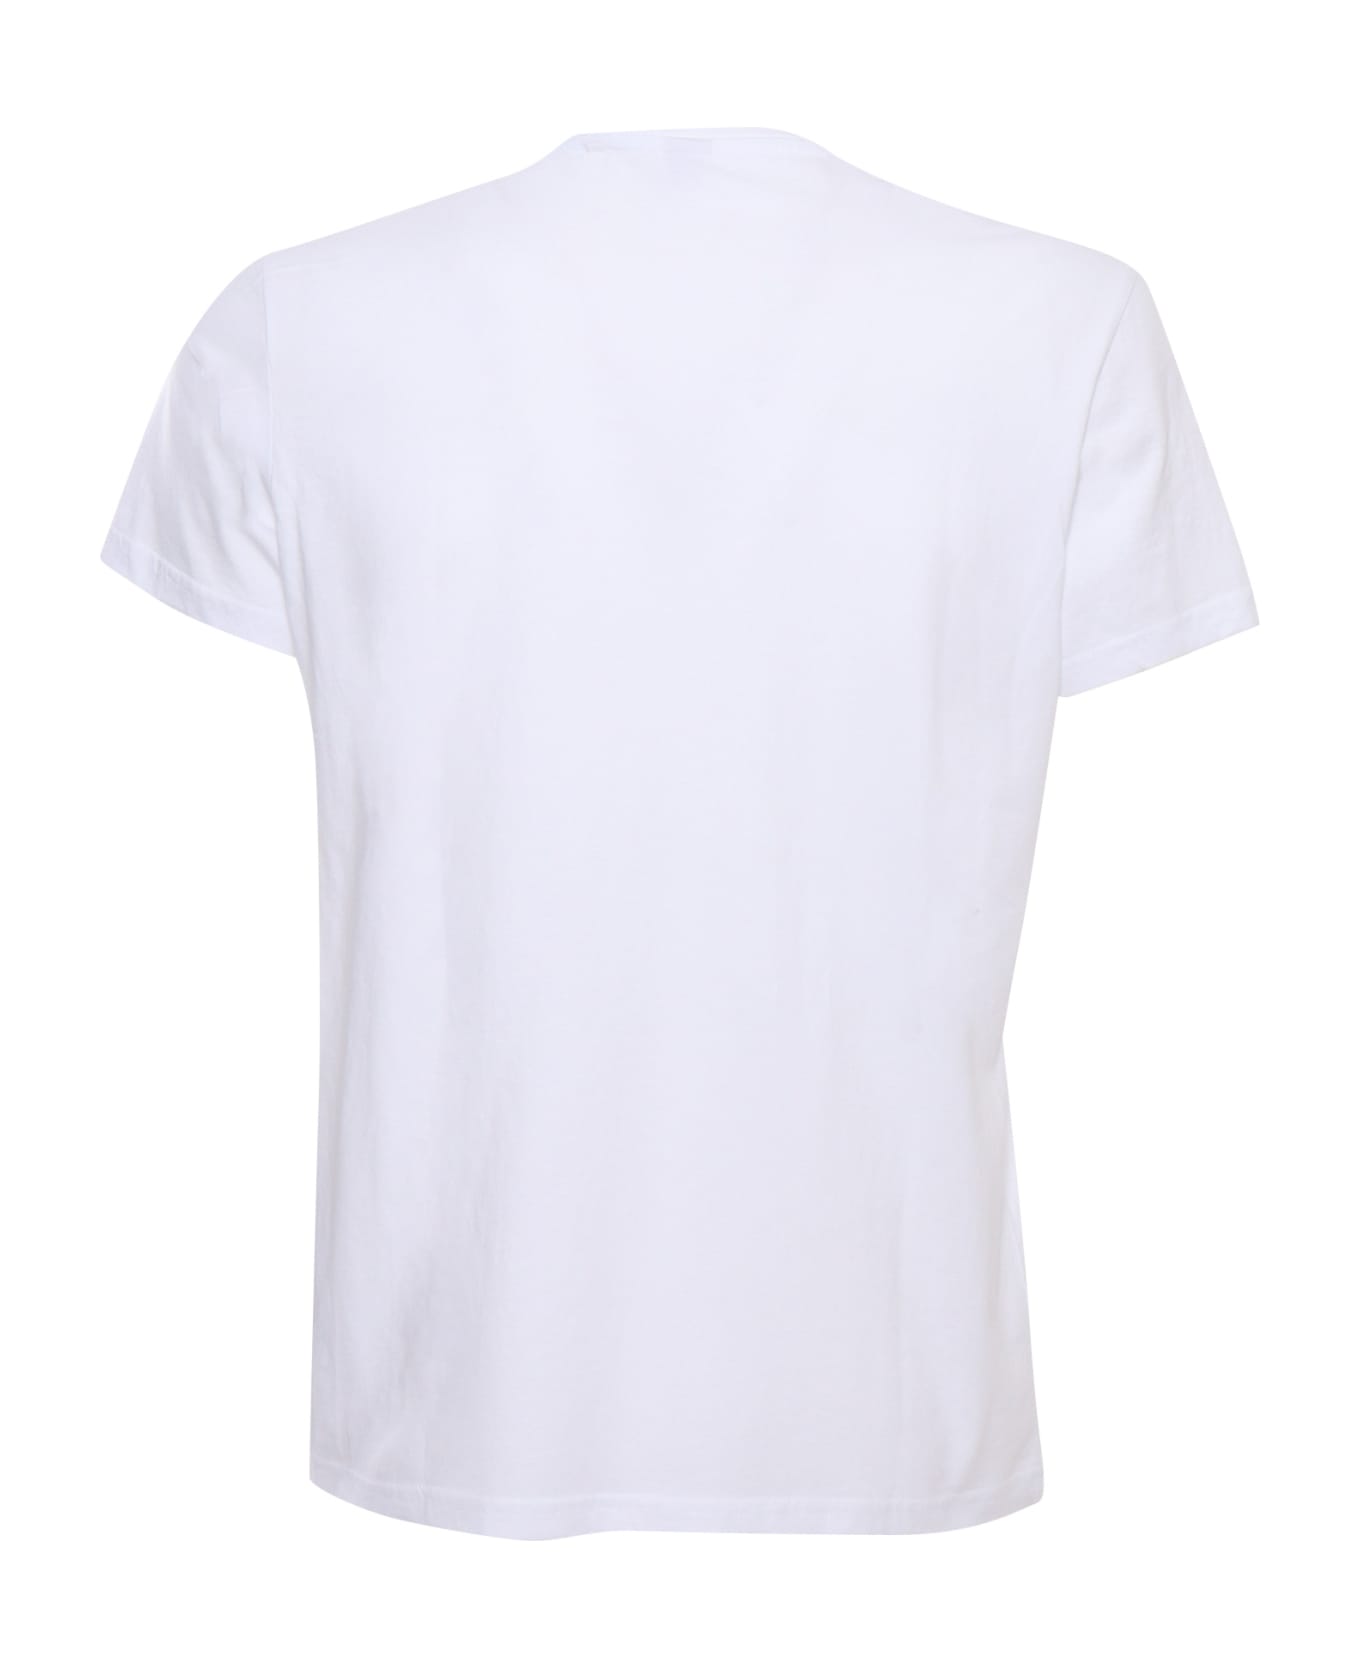 Aspesi White T-shirt With Print - WHITE シャツ